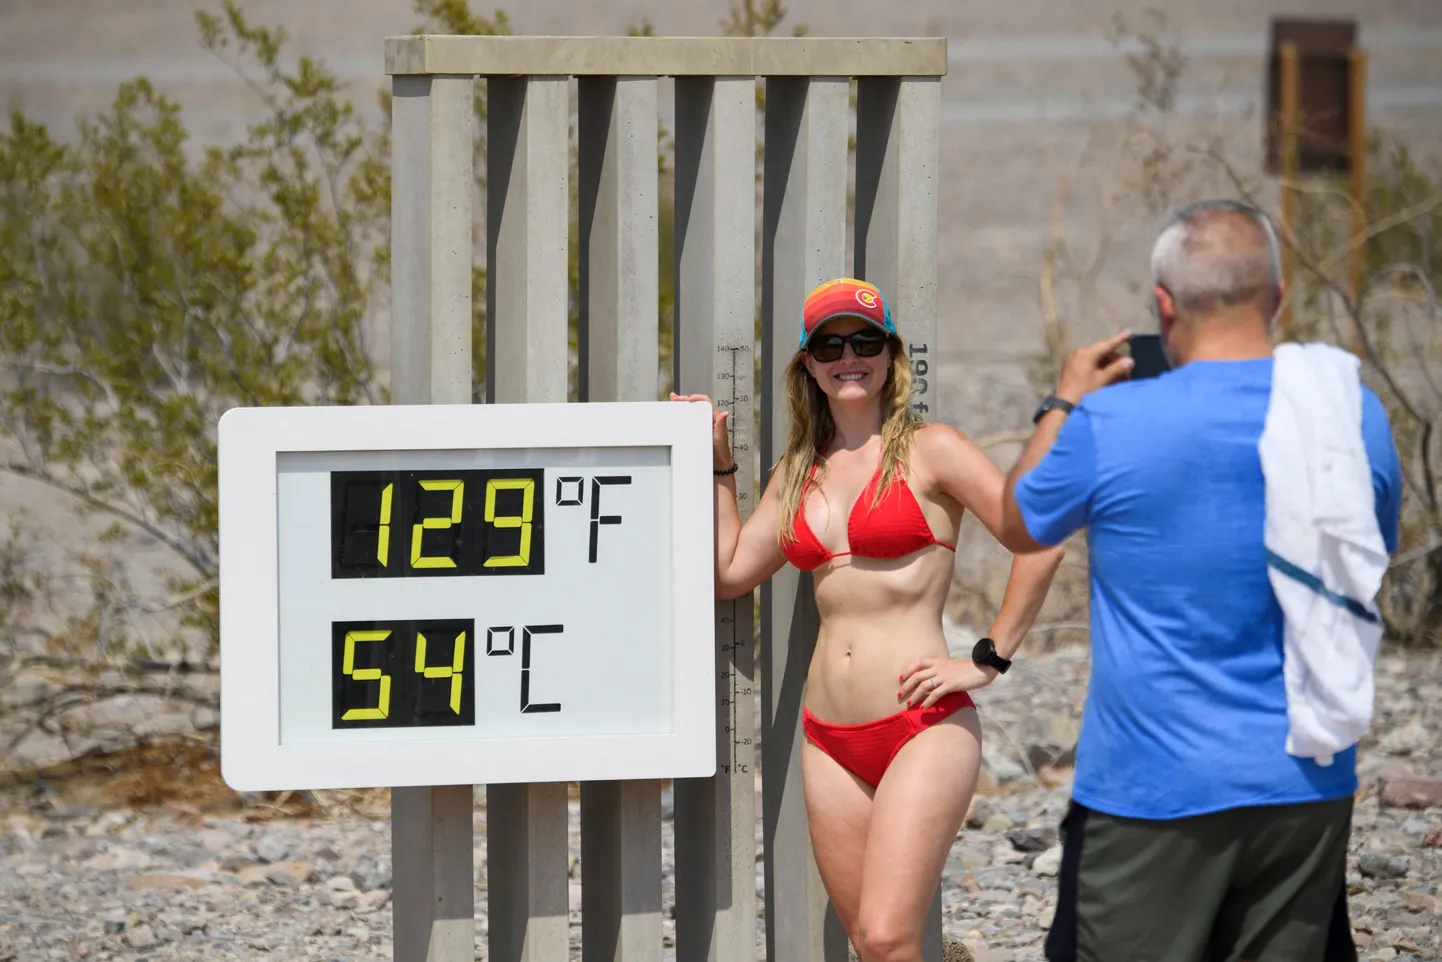 Термометр в Национальном парке Калифорнии показывает 54 градуса по Цельсию.